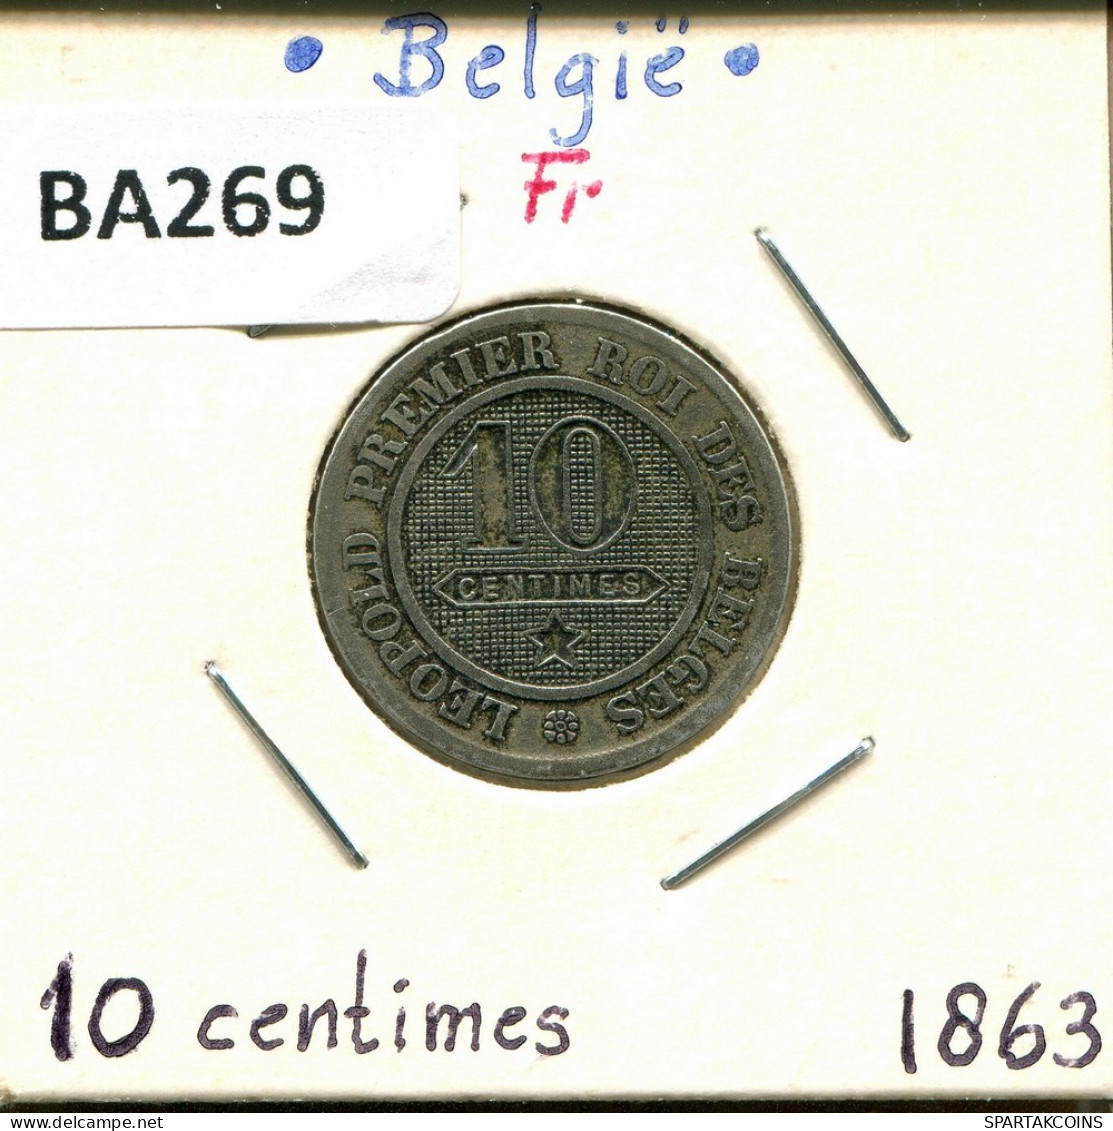 10 CENTIMES 1863 FRENCH Text BELGIQUE BELGIUM Pièce #BA269.F.A - 10 Cent